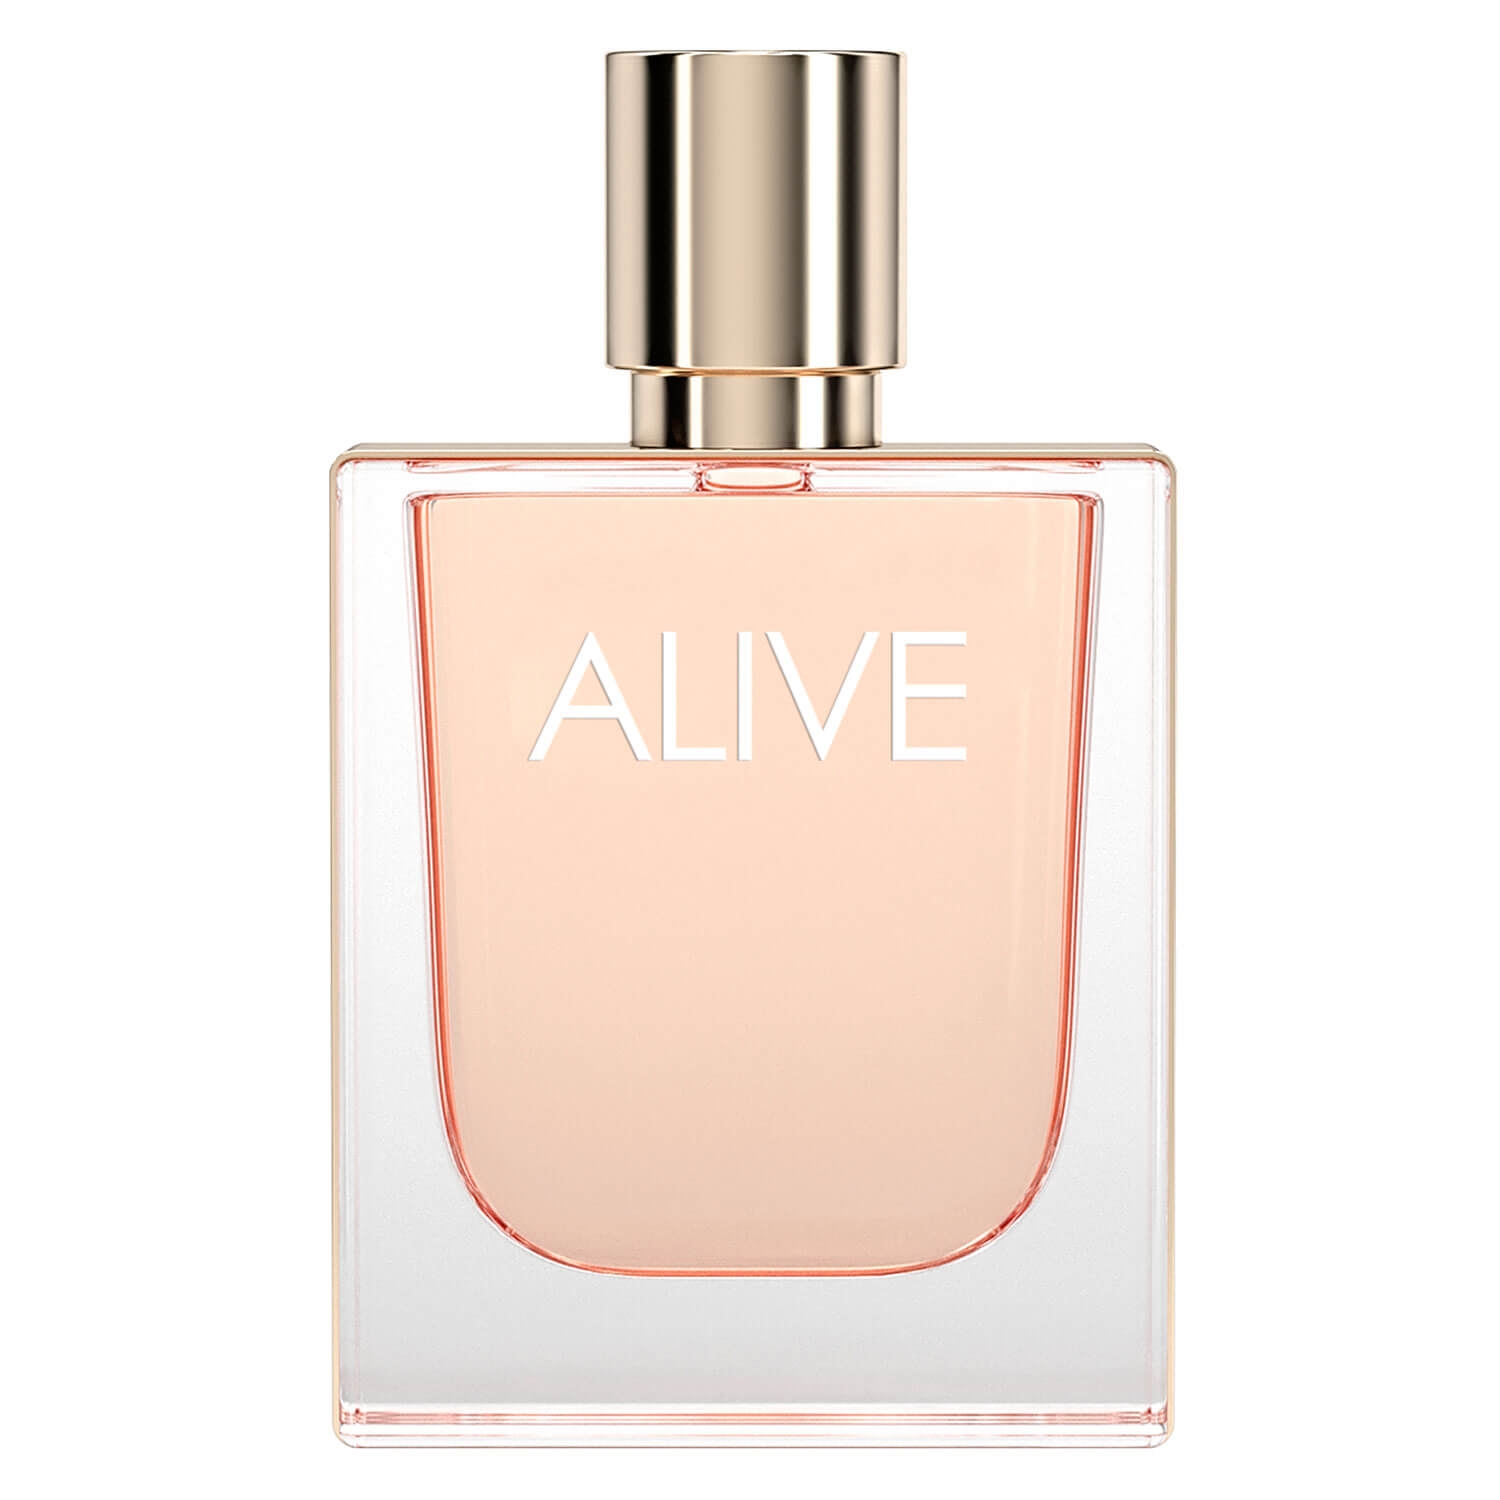 Product image from Boss Alive - Eau de Parfum